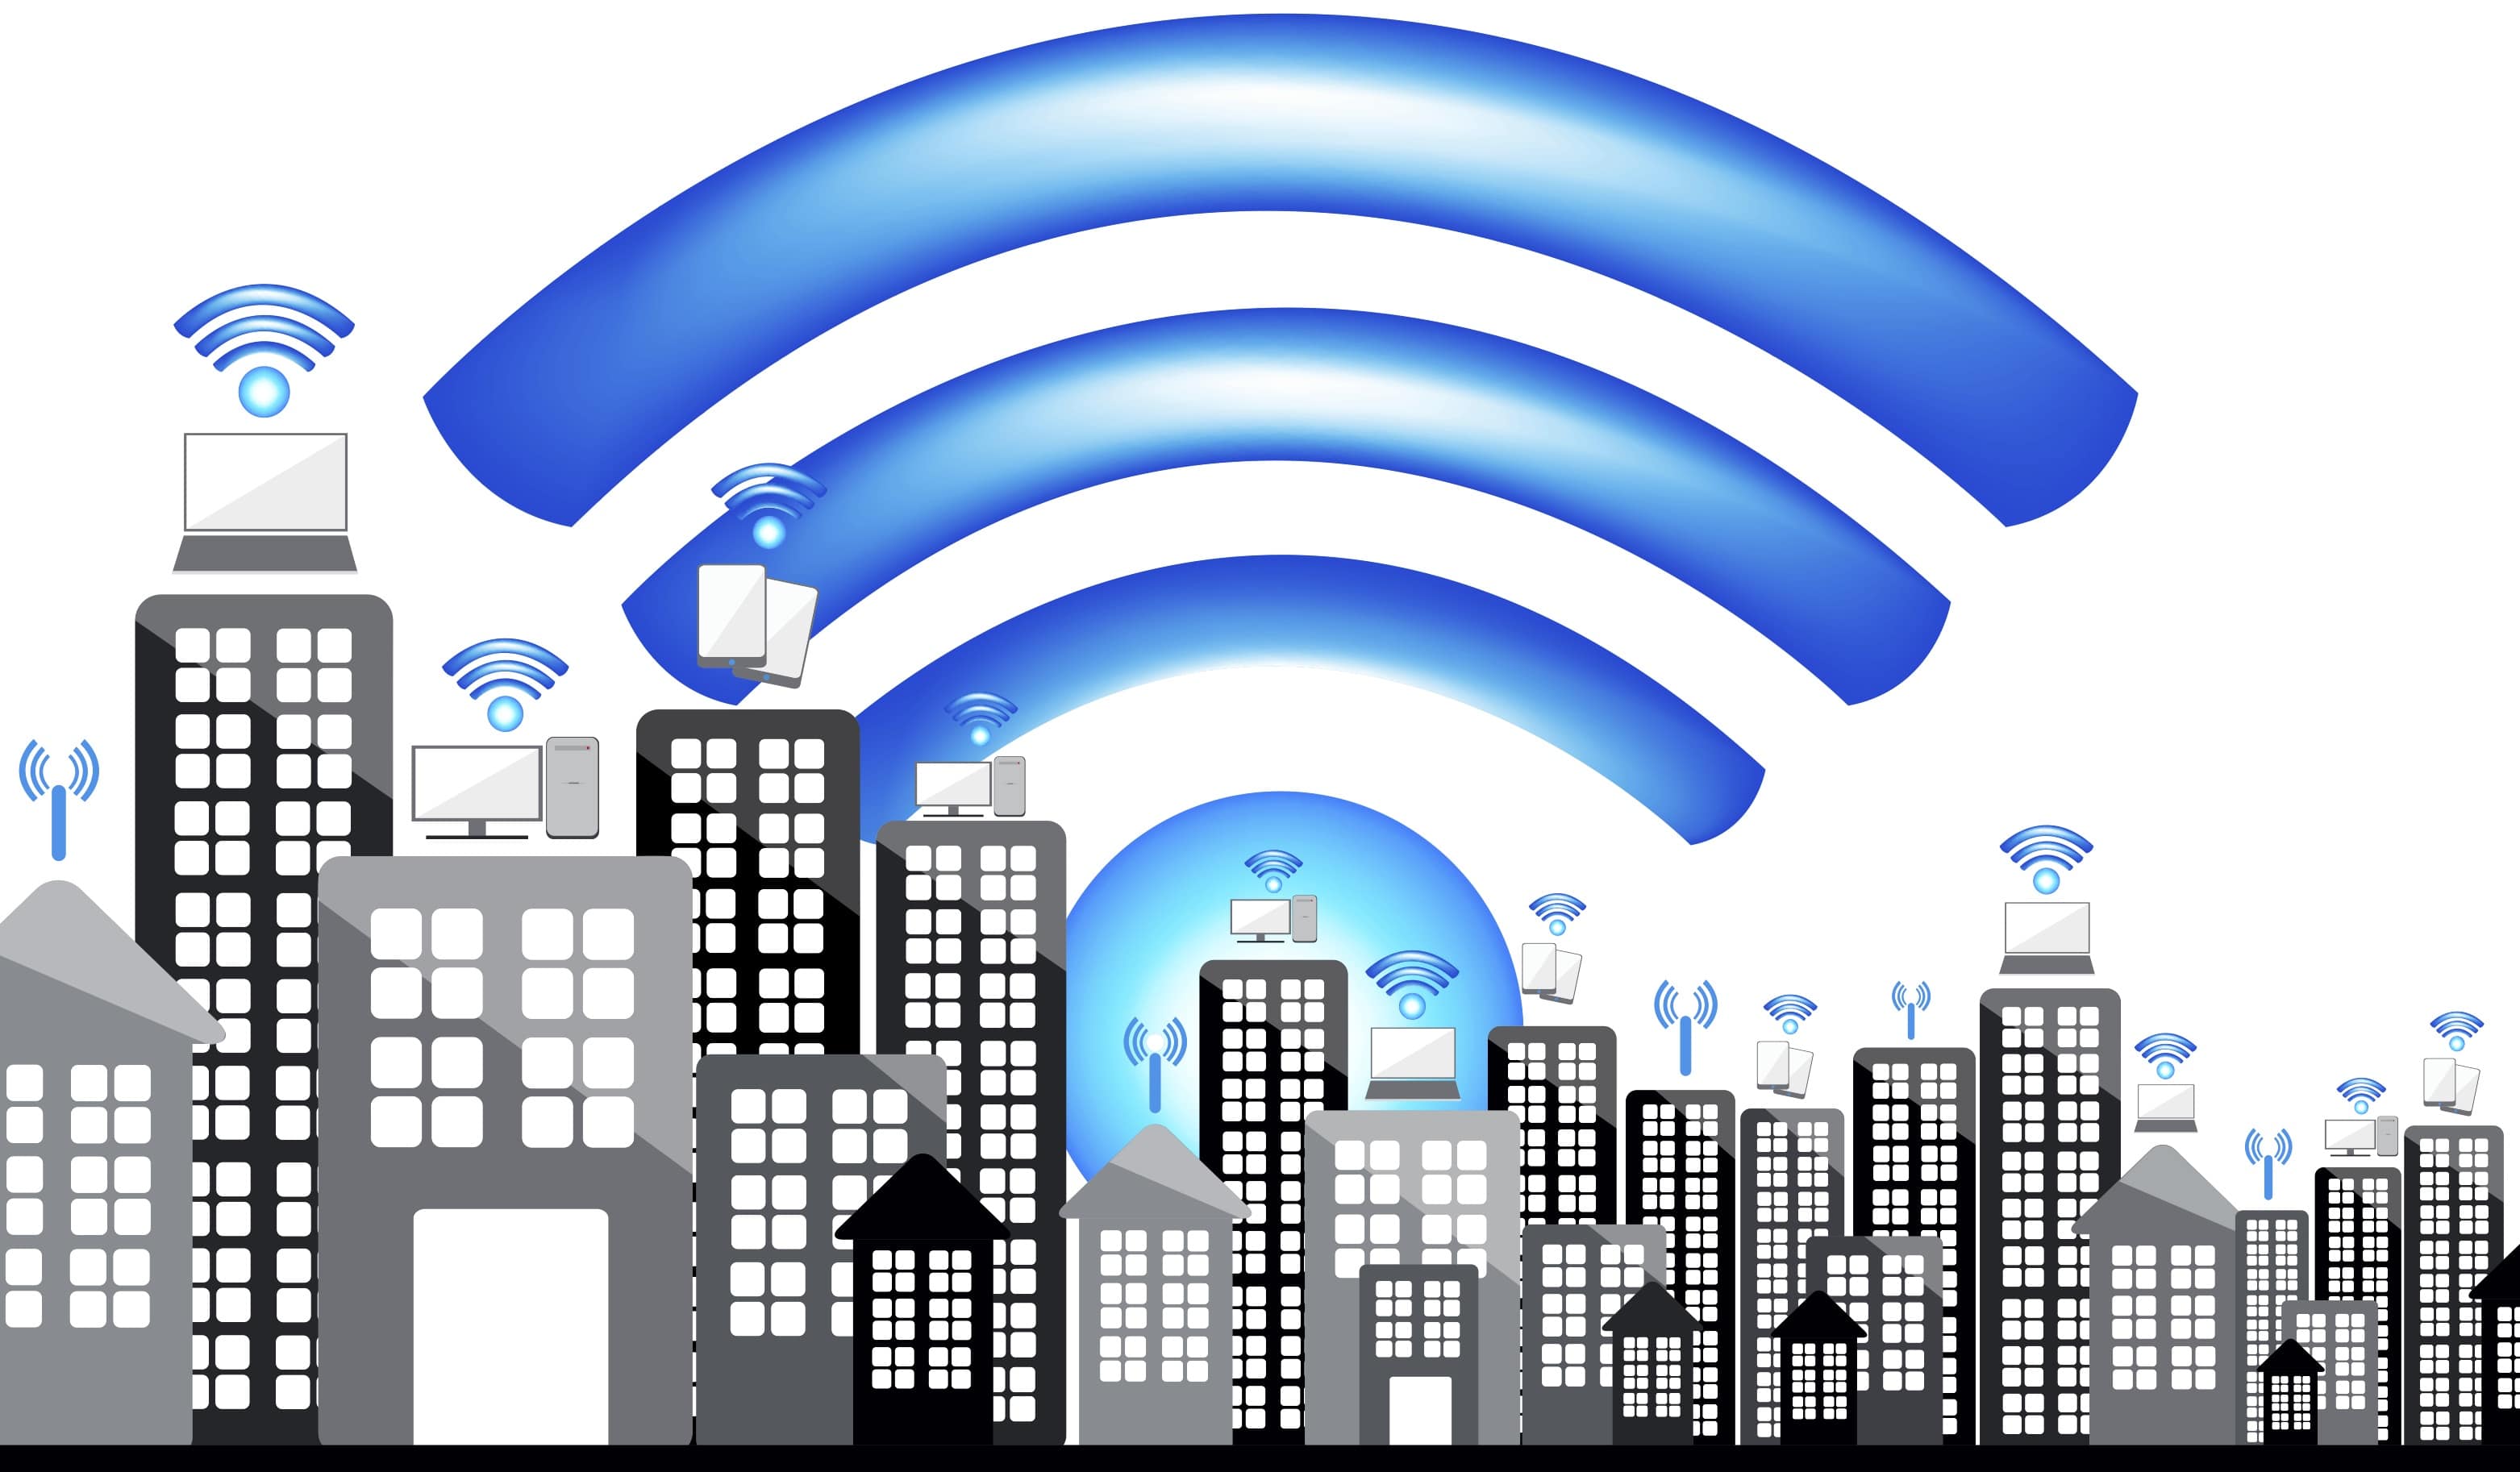 Comment protéger votre réseau wi-fi en 5 étapes